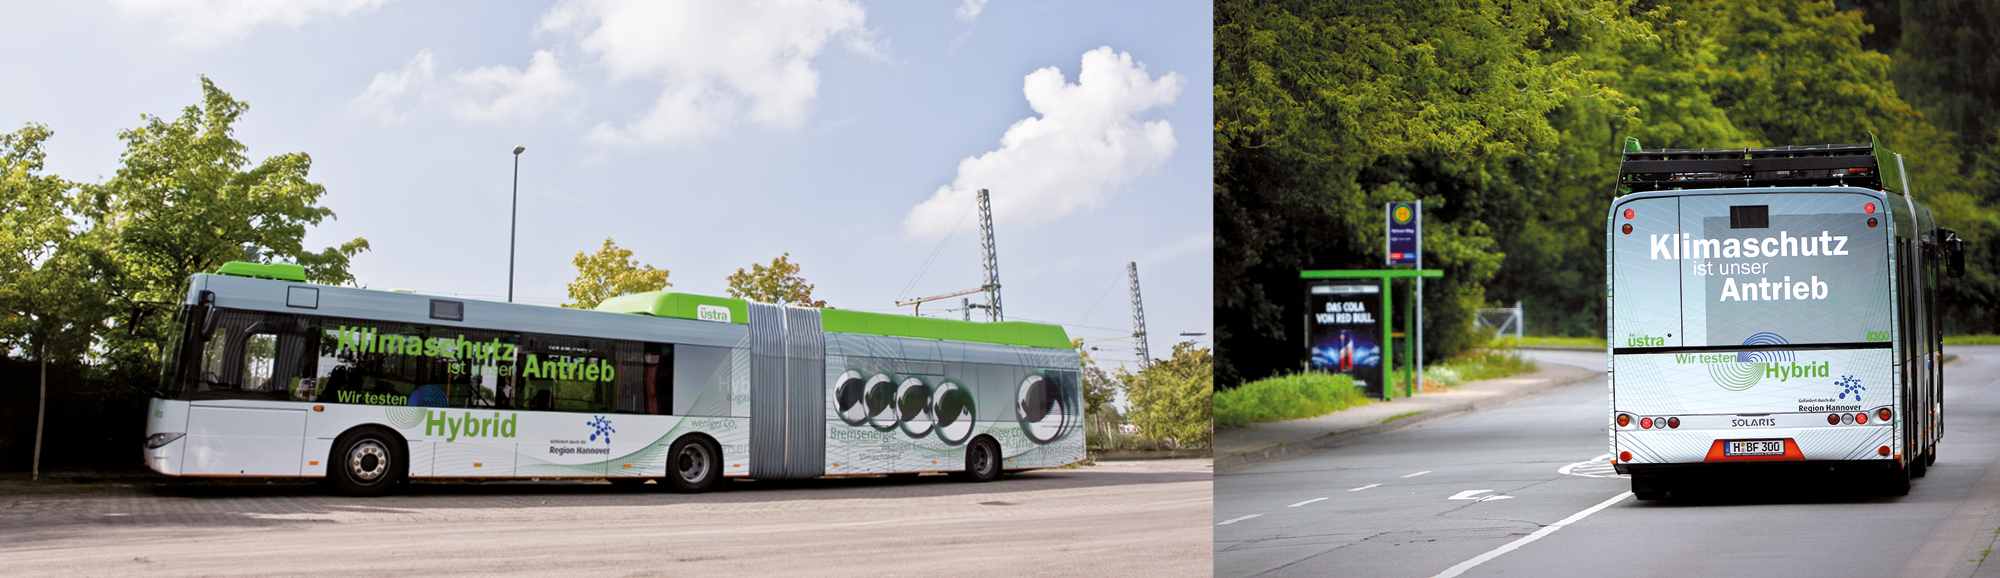 Ein Bus mit einer Beschriftung zum Thema Klimaschutz: "Klimaschutz ist unser Antrieb"